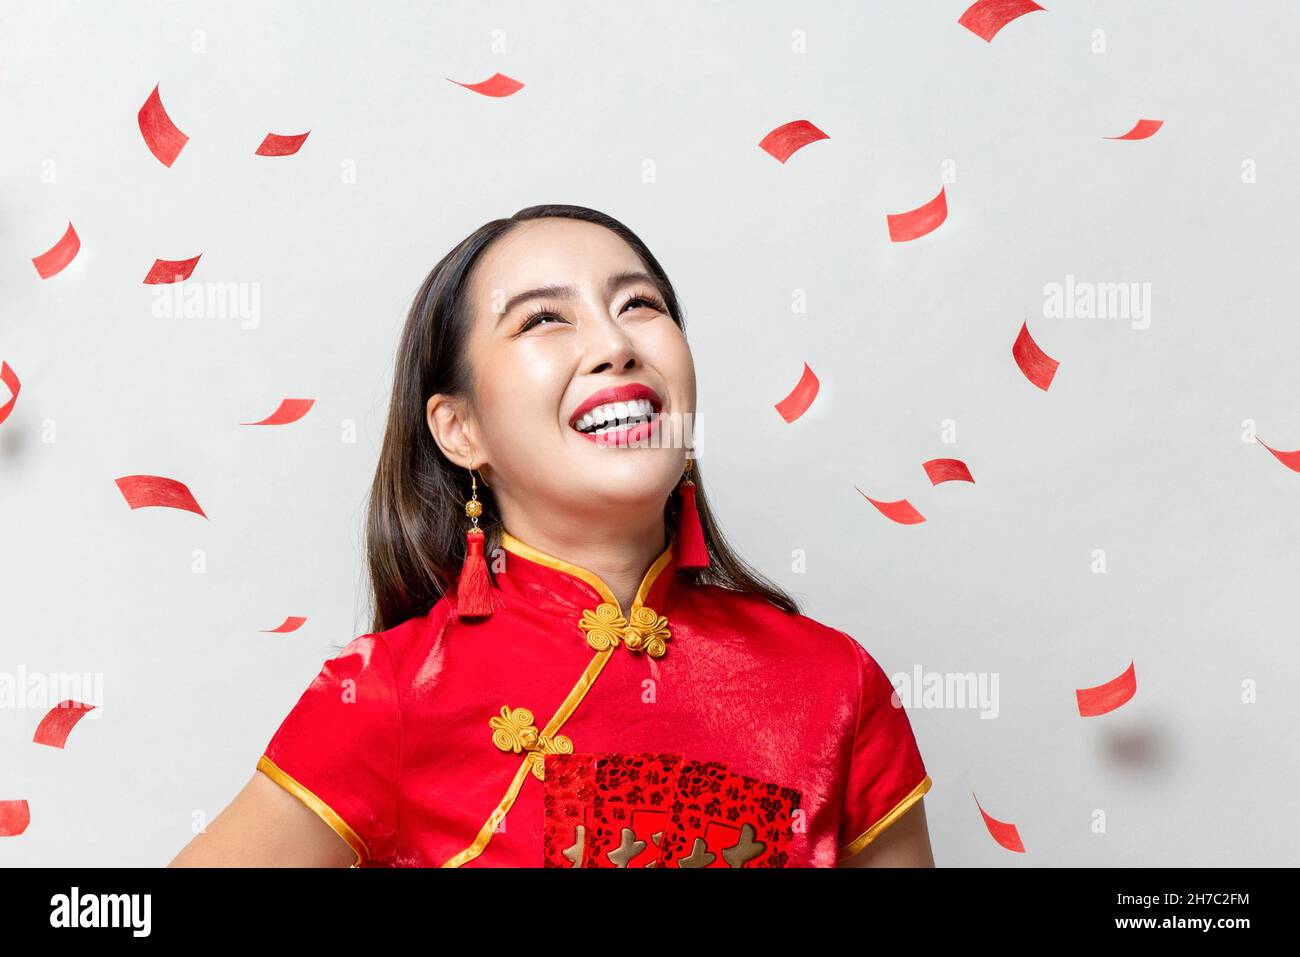 Lächelnde glückliche asiatische Frau in traditioneller orientalischer Tracht, die auf hellgrauem Hintergrund mit rotem Konfetti nach oben blickt Stockfoto